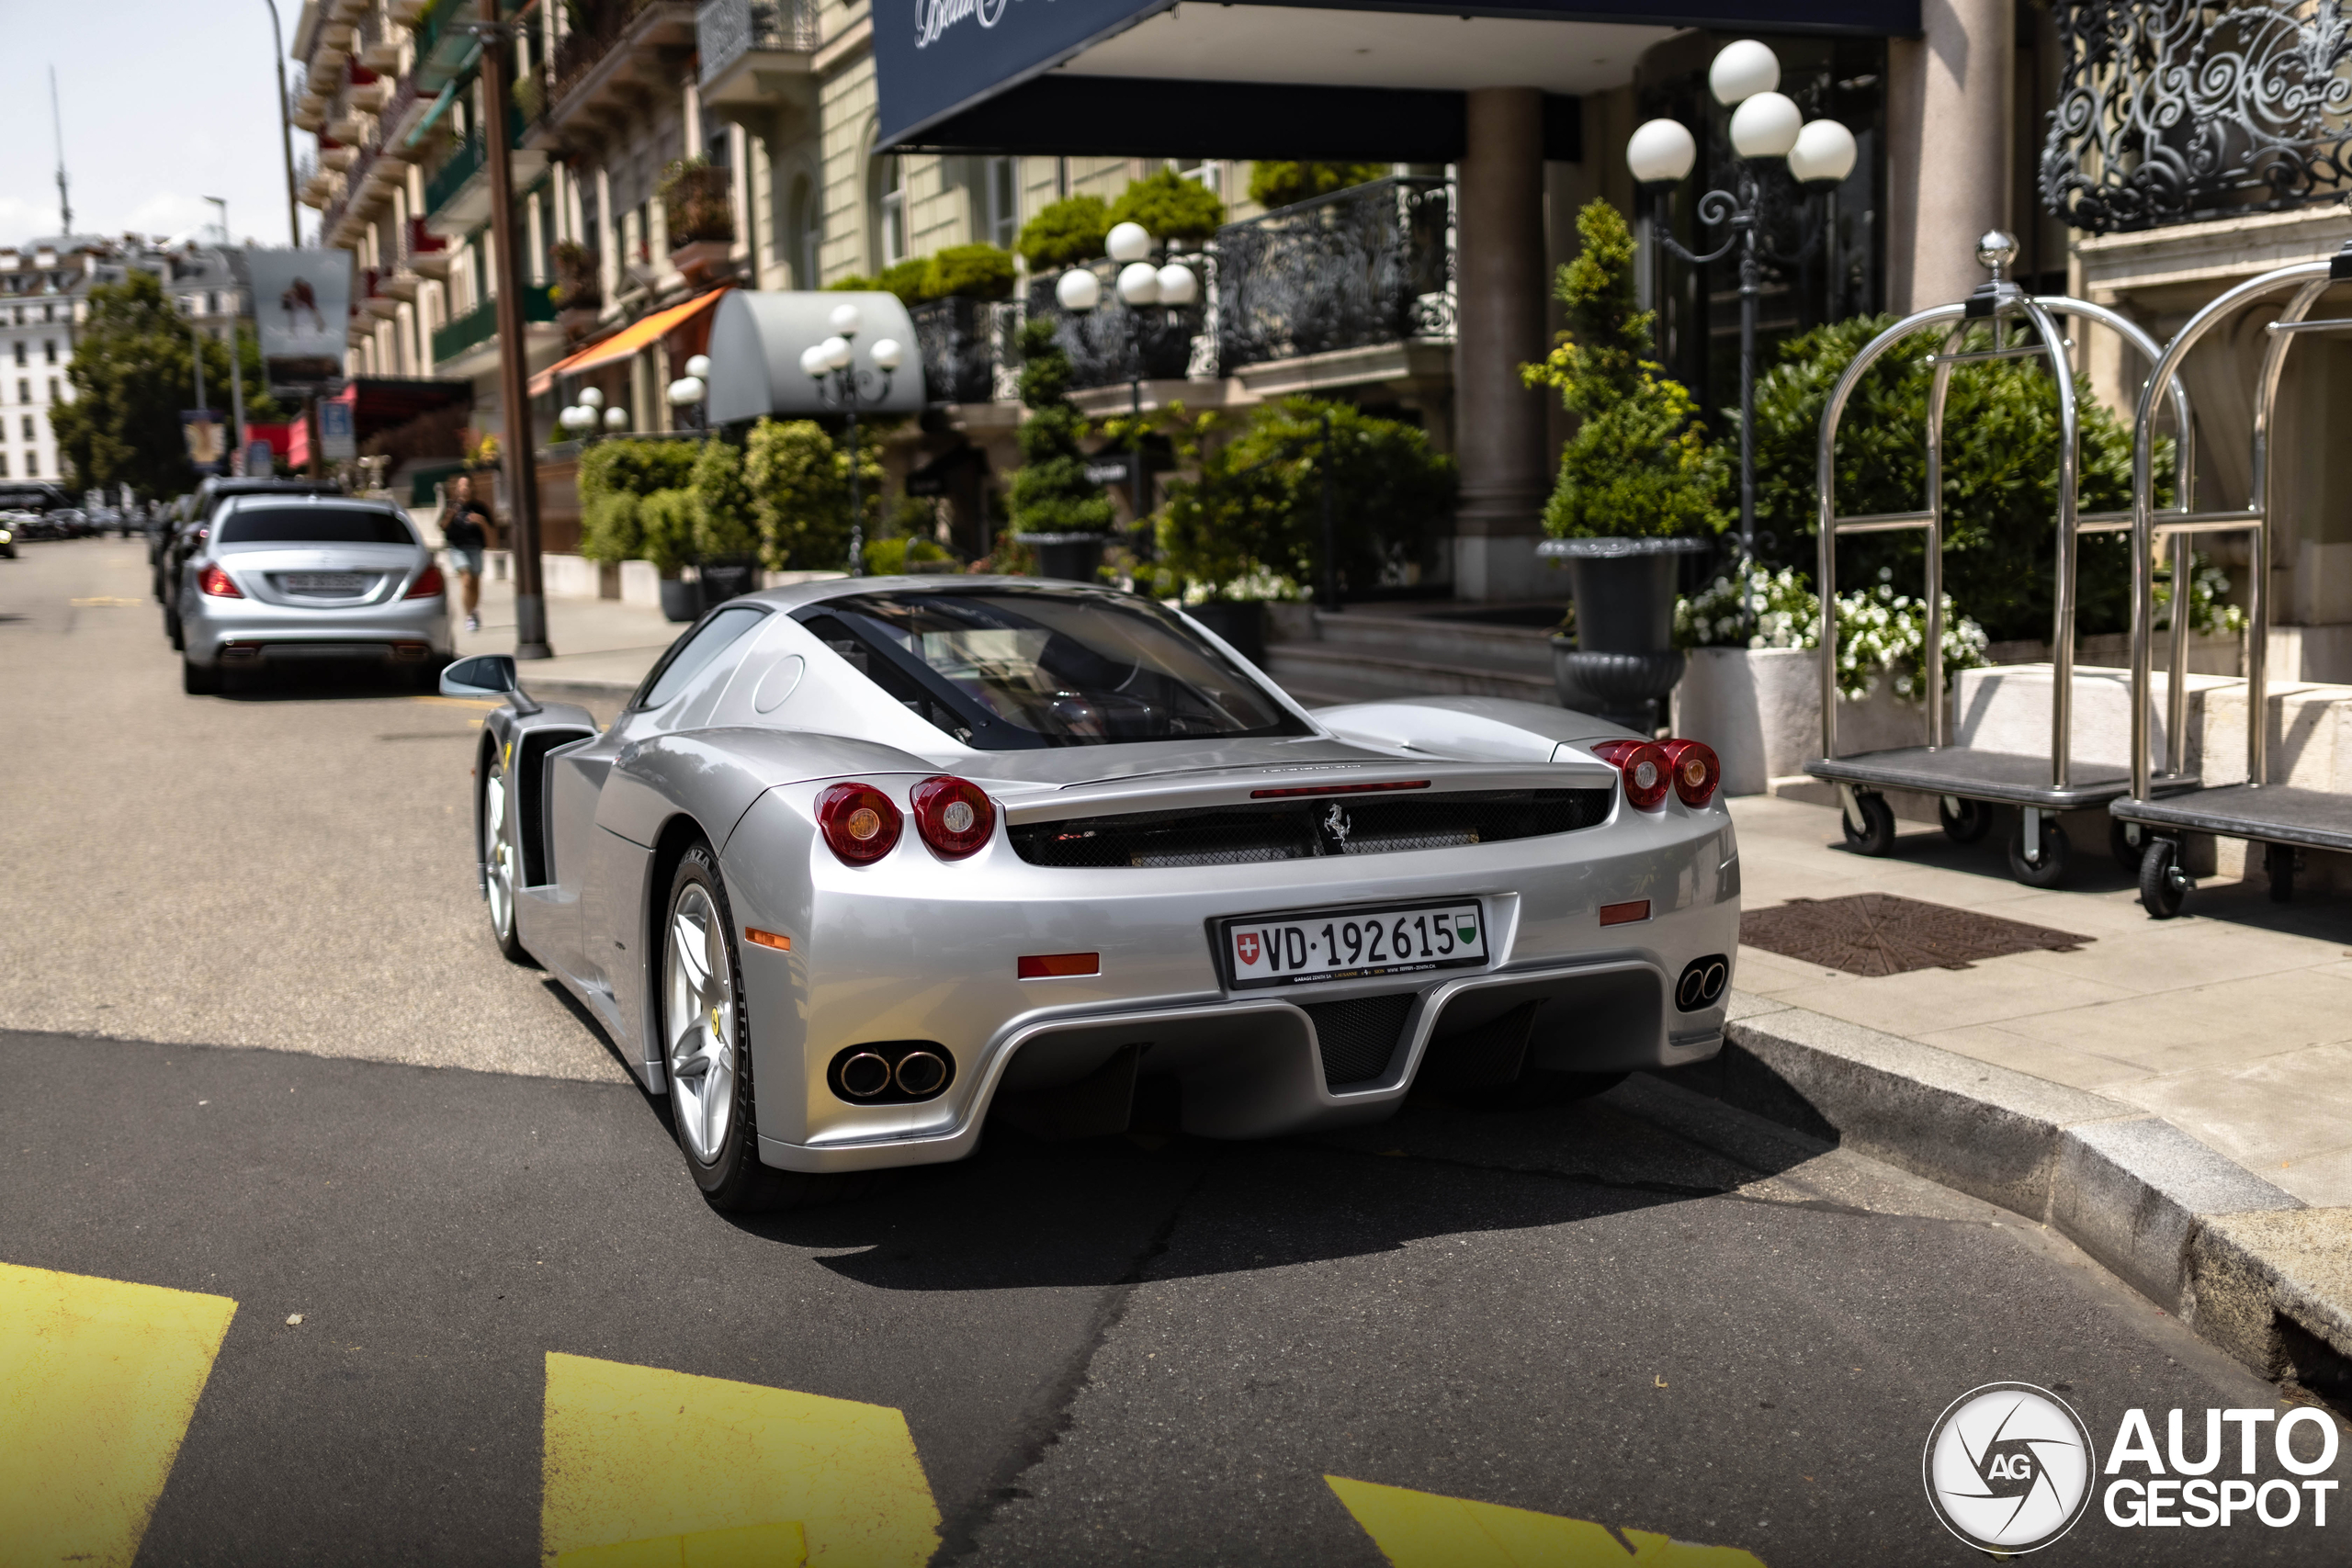 Zilveren Ferrari Enzo blijft een geweldige auto